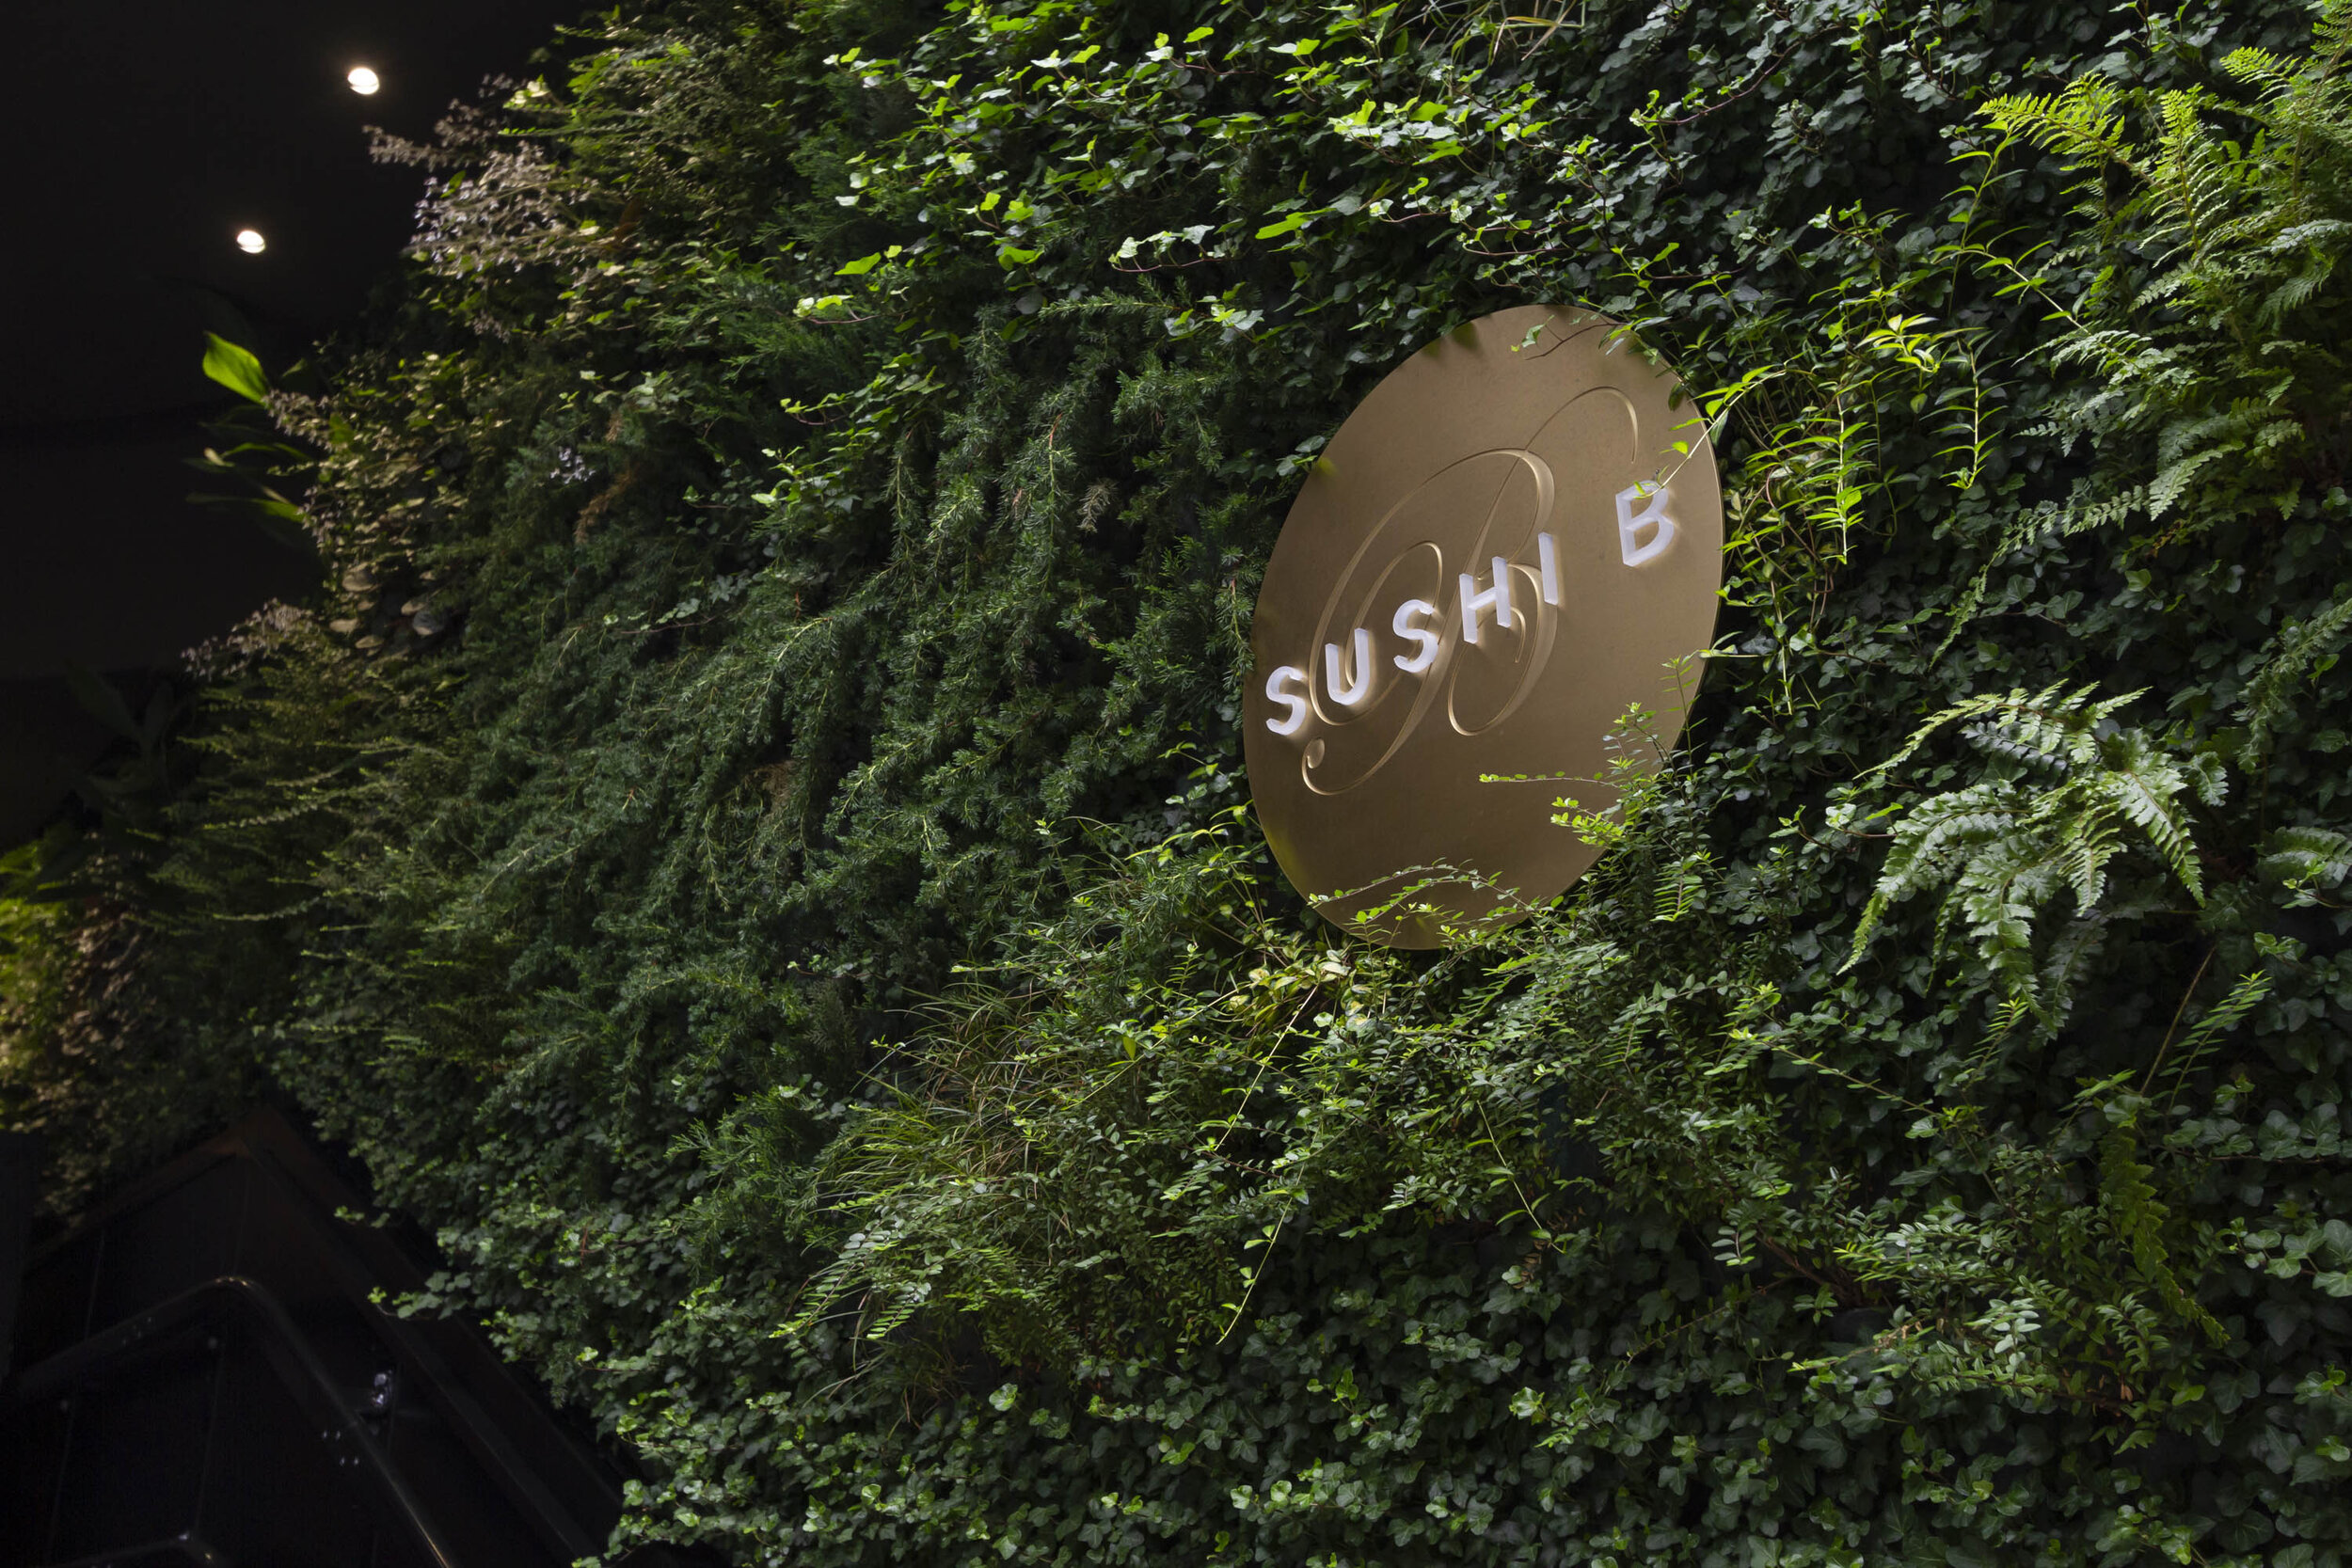 Sushi-B-Sundar-Italia-Living-Walls-004.JPG